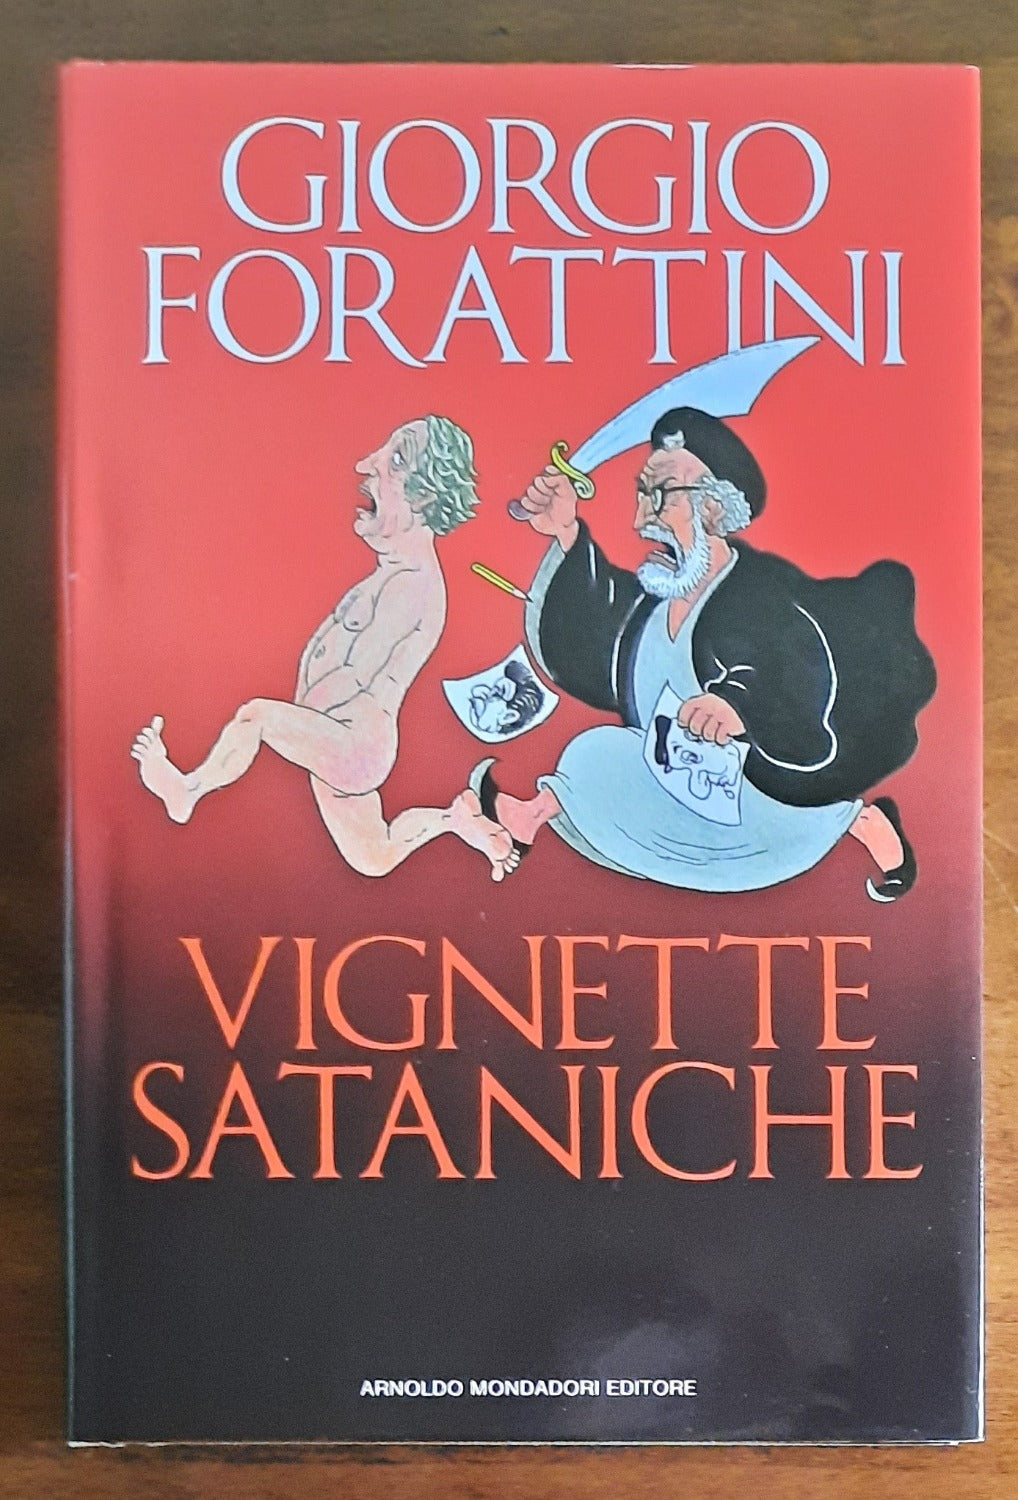 Vignette sataniche - Giorgio Forattini